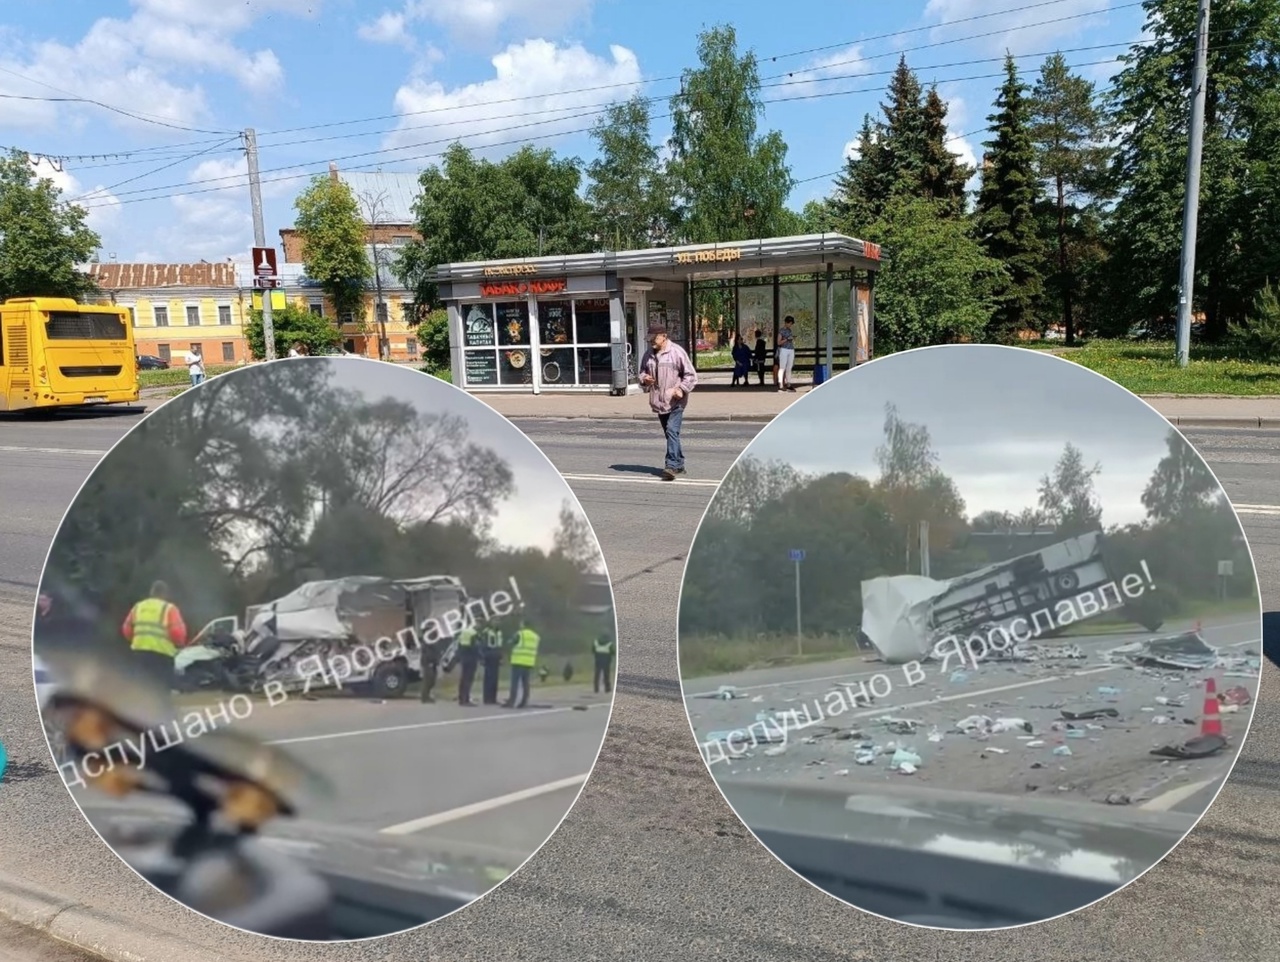 "Погибший накрыт": в Ярославской области произошло жесткое ДТП